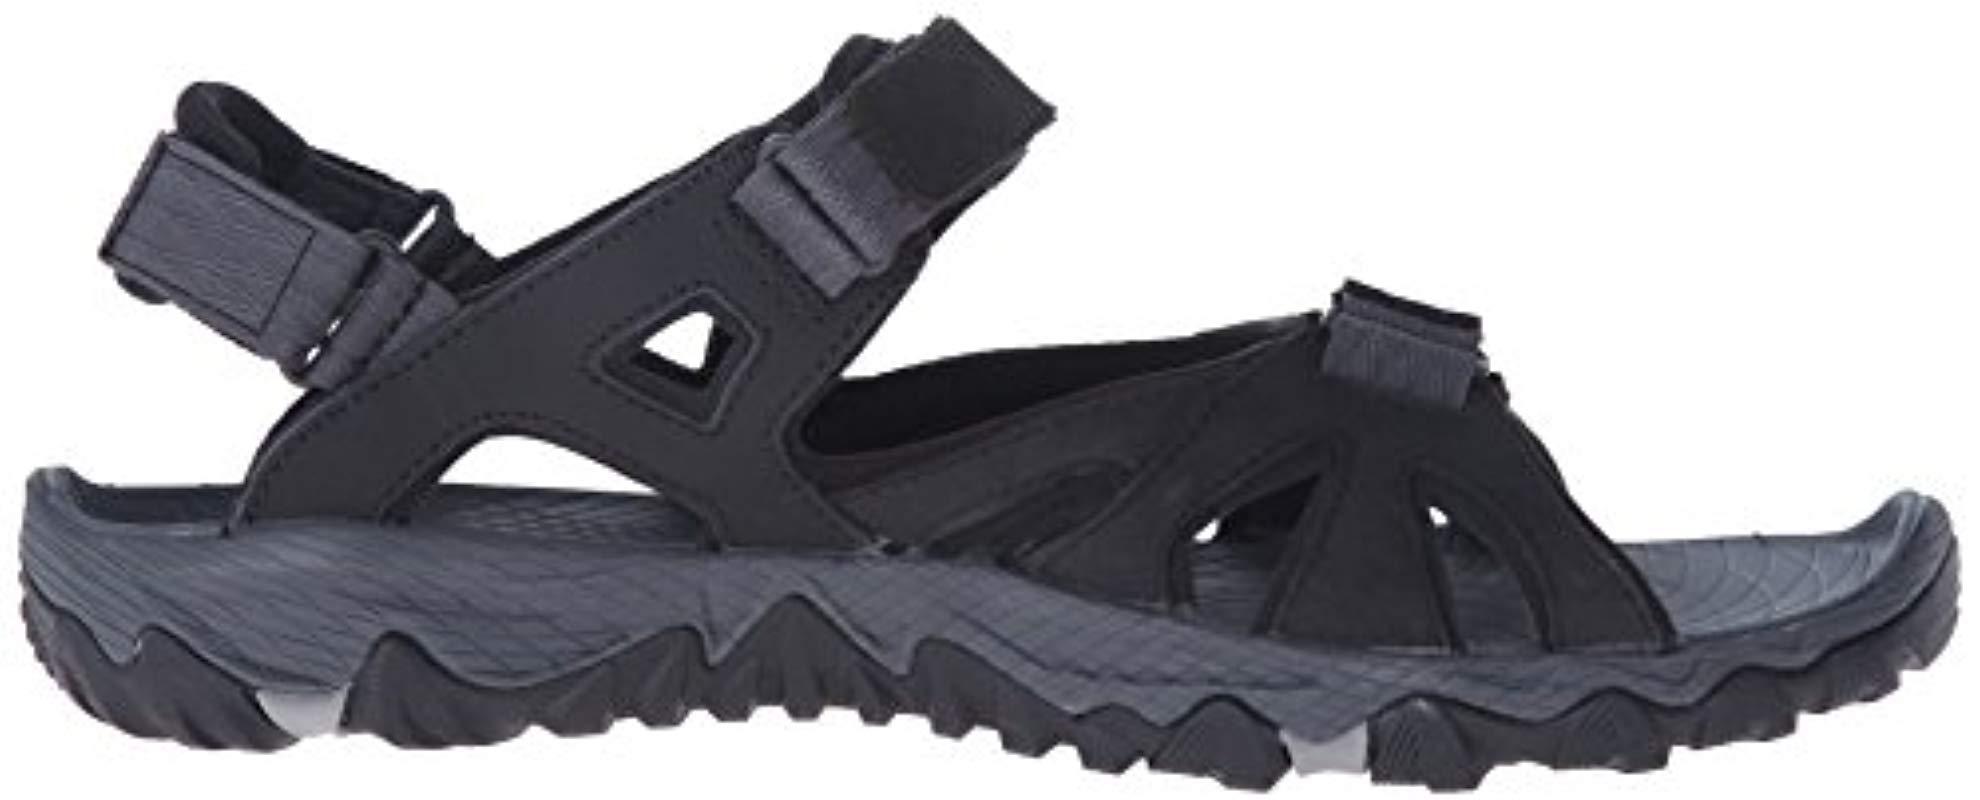 Merrell Men's Black All Out Blaze Sieve Convert Hiking Sandals